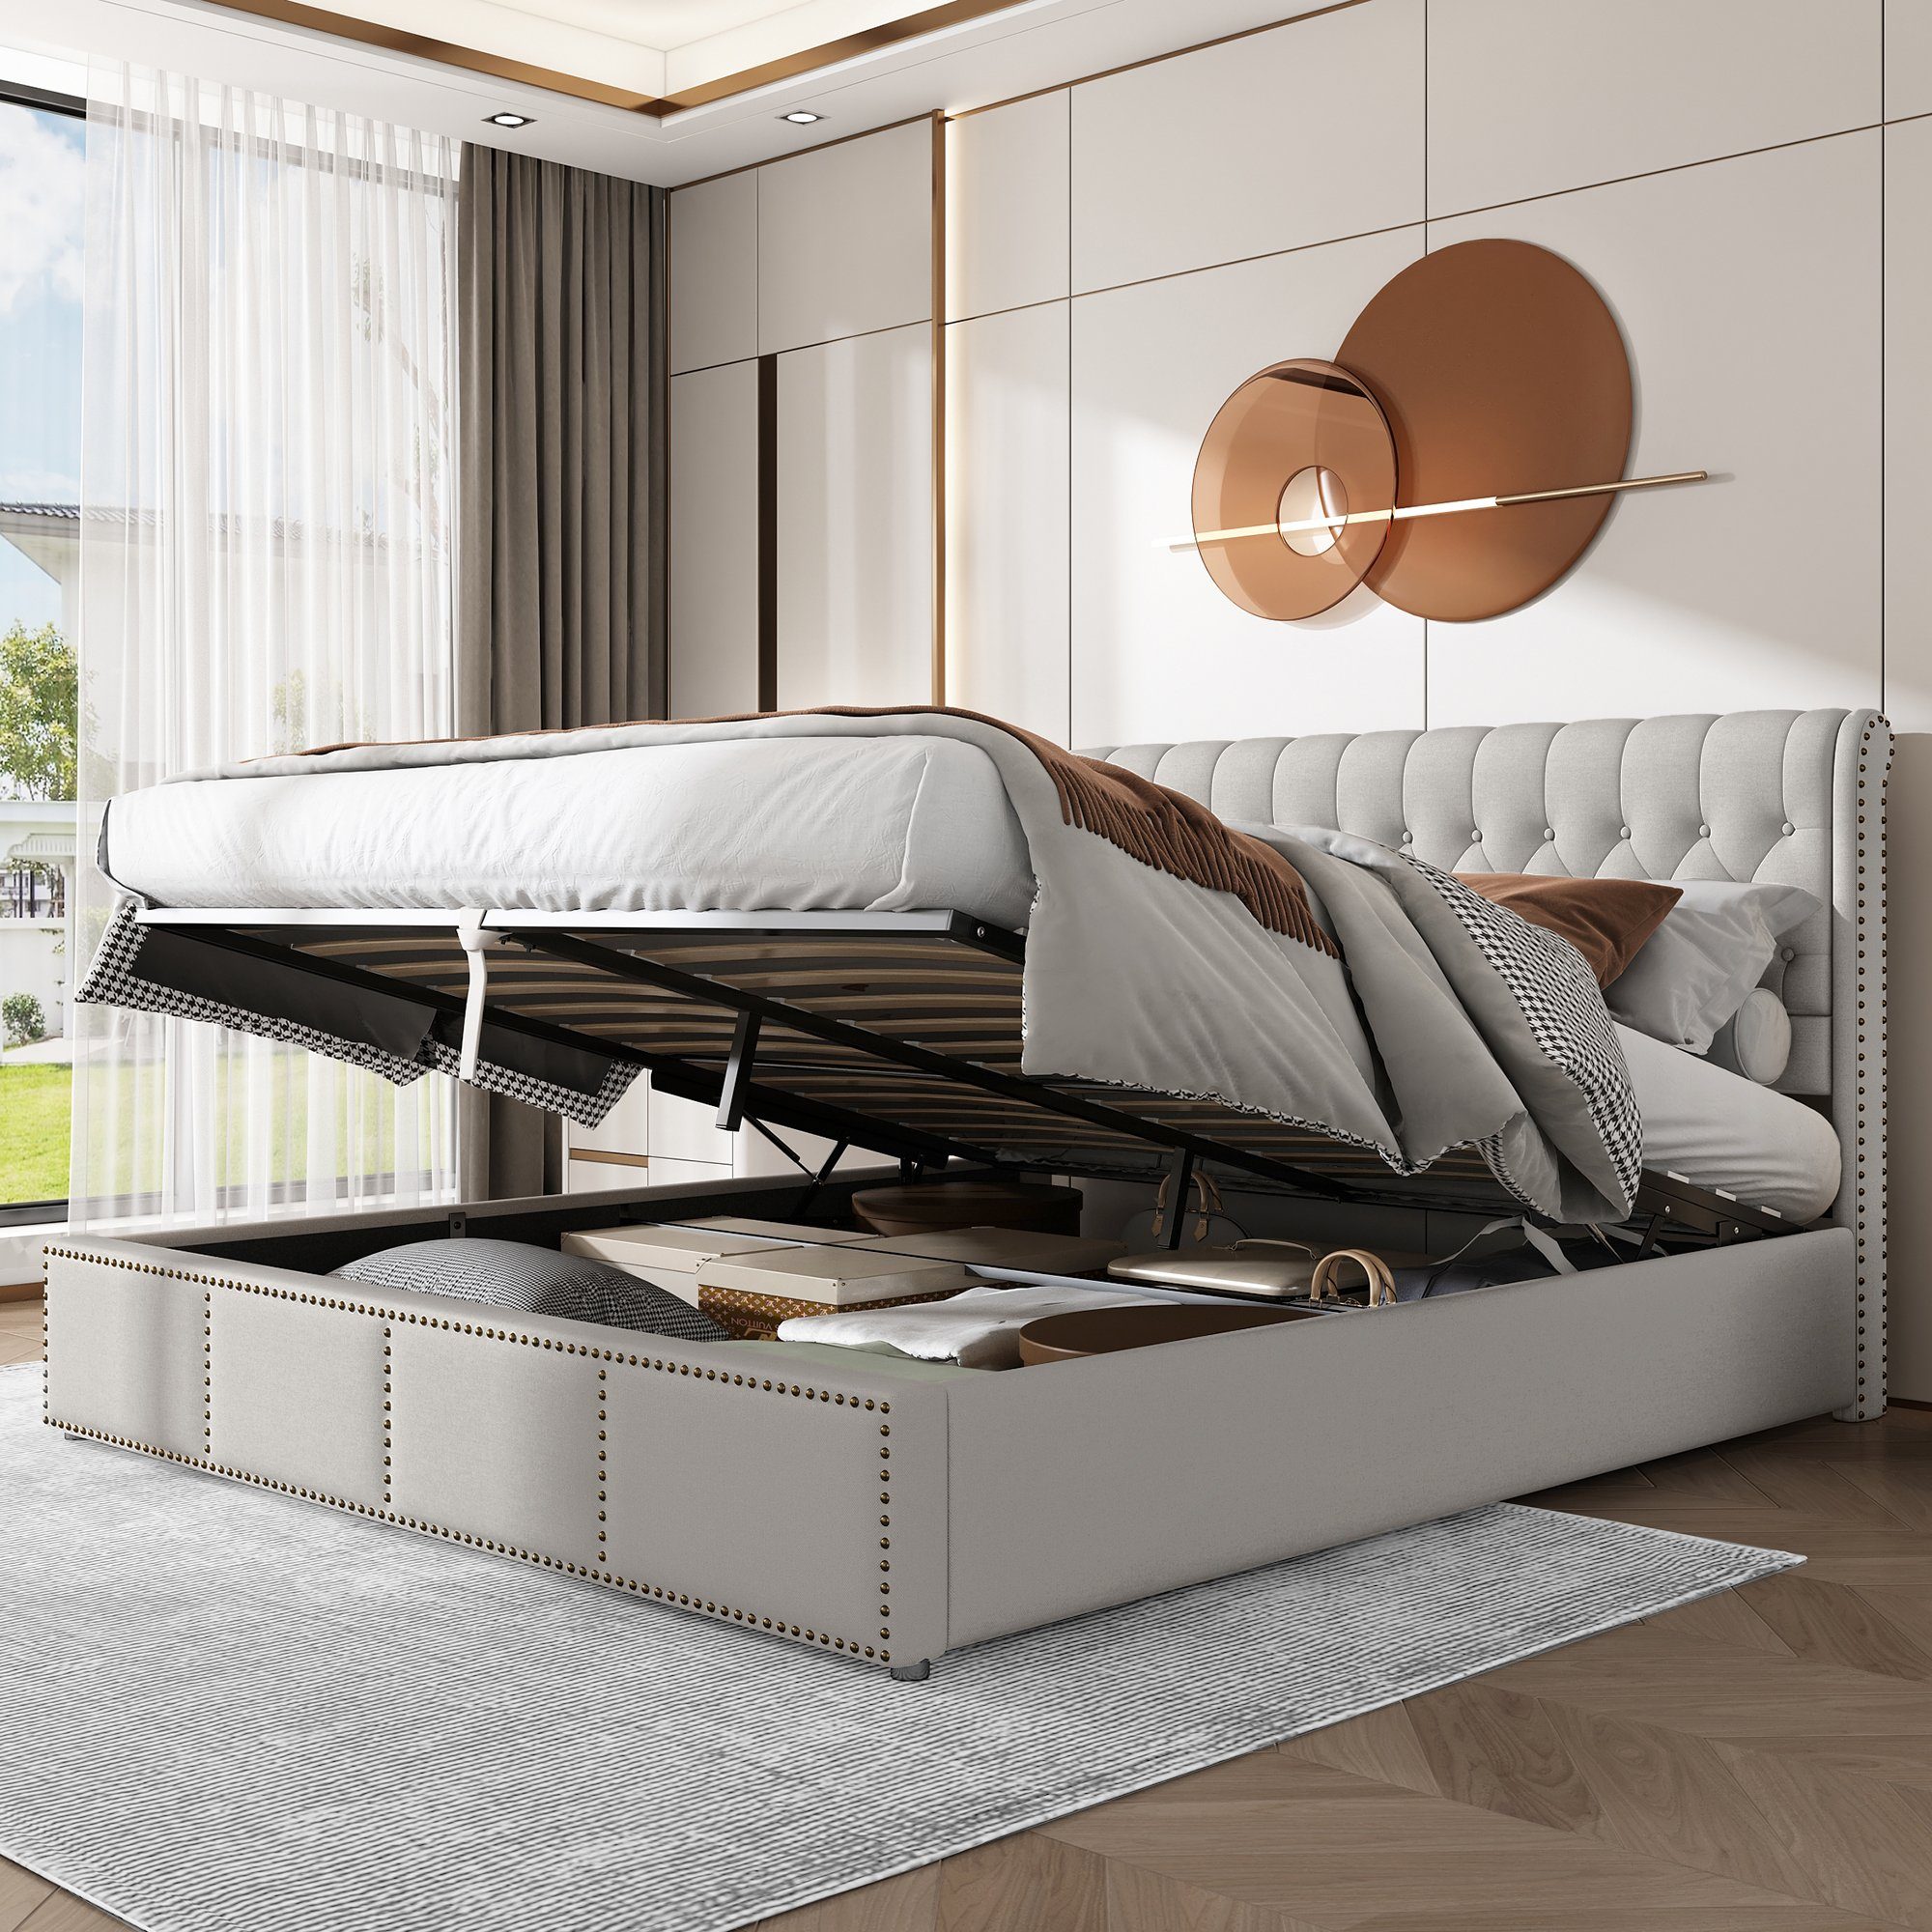 SOFTWEARY Stauraumbett Doppelbett mit Lattenrost und Bettkasten (180x200 cm), gepolsterter Kopfteil, Leinen